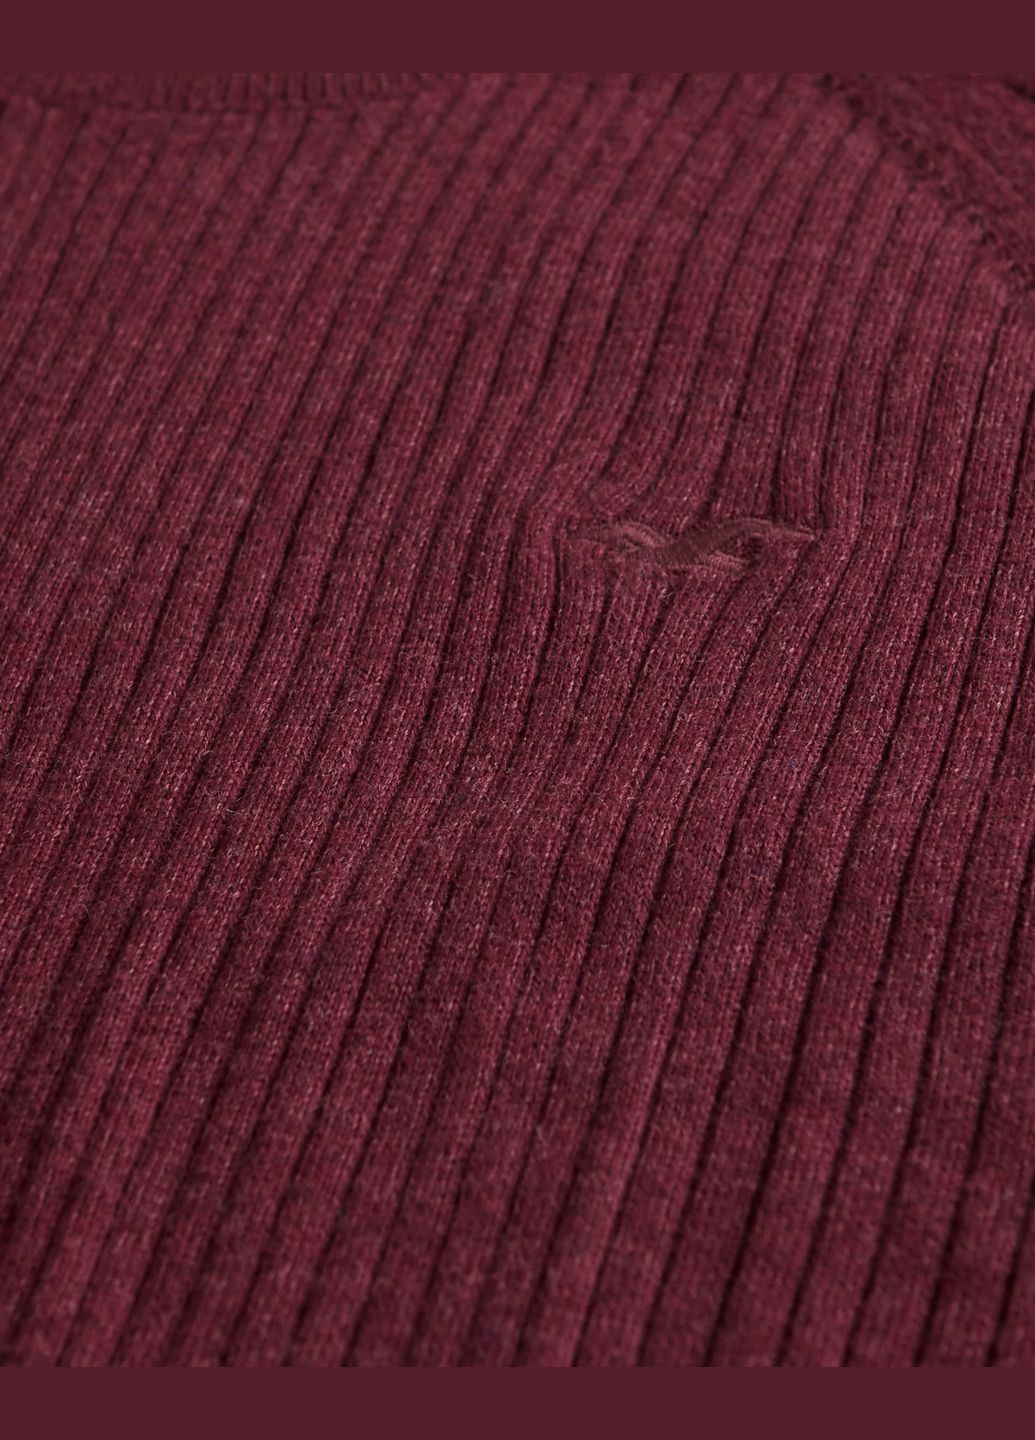 Бордовый демисезонный свитер мужской - свитер hc7393m Hollister